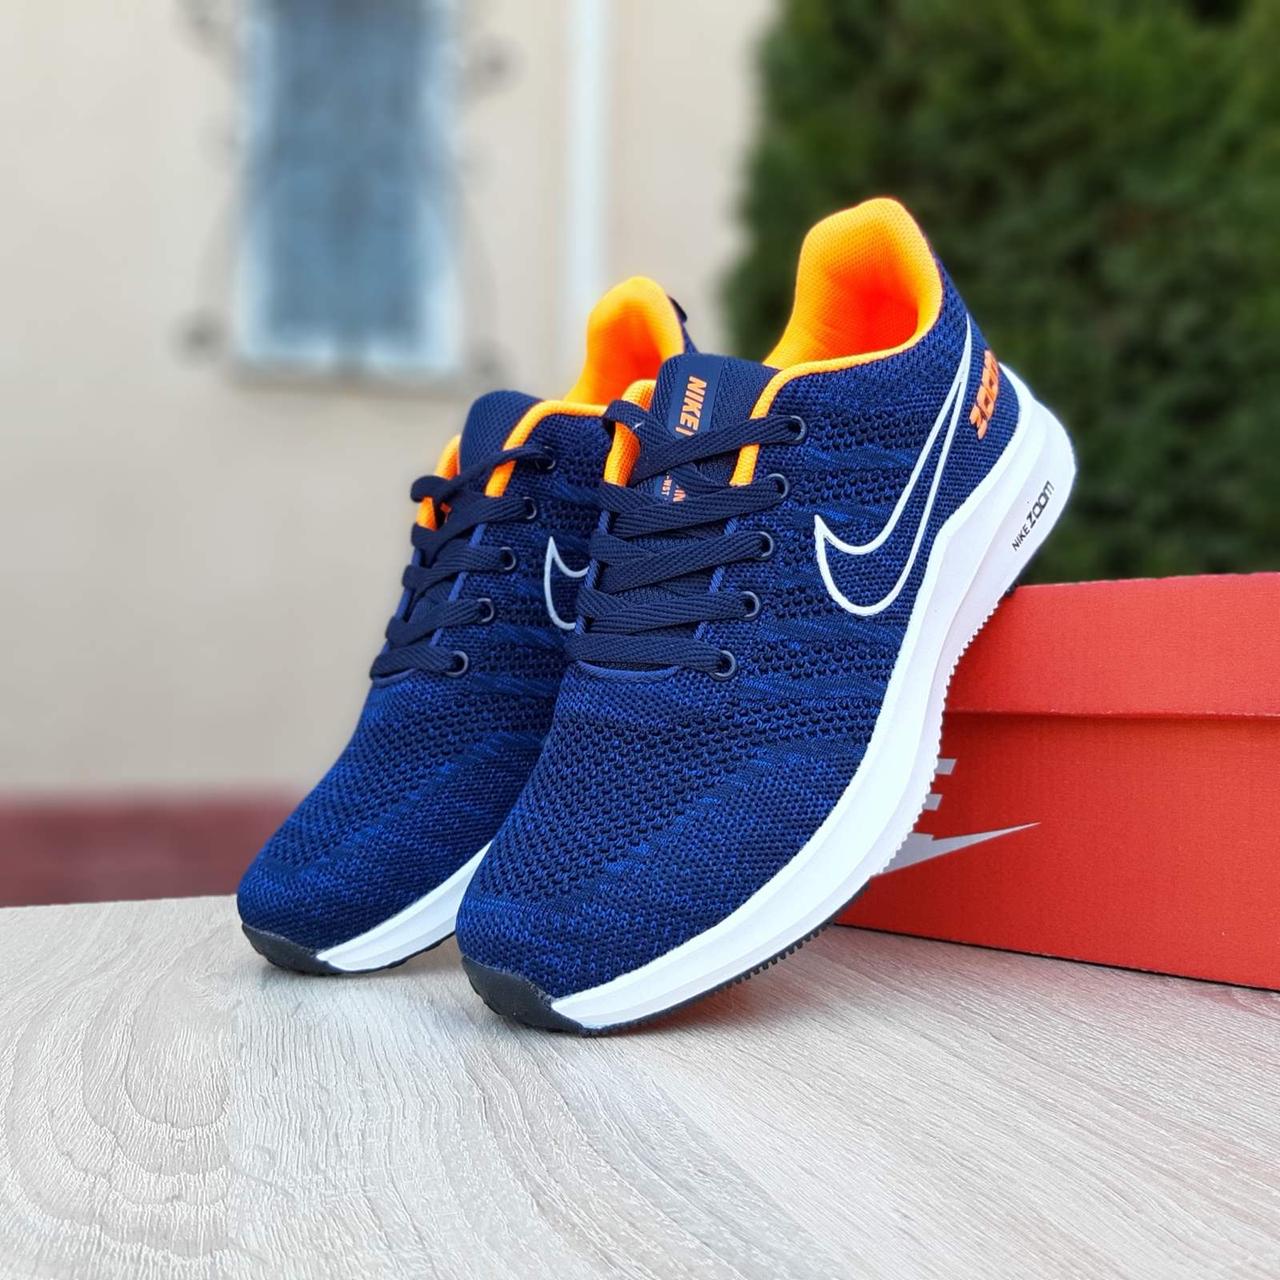 

Кроссовки мужские Nike ZOOM Blue Orange синие с оранжевым. Стильные кроссовочки Найк Зум для мужчин, Синий